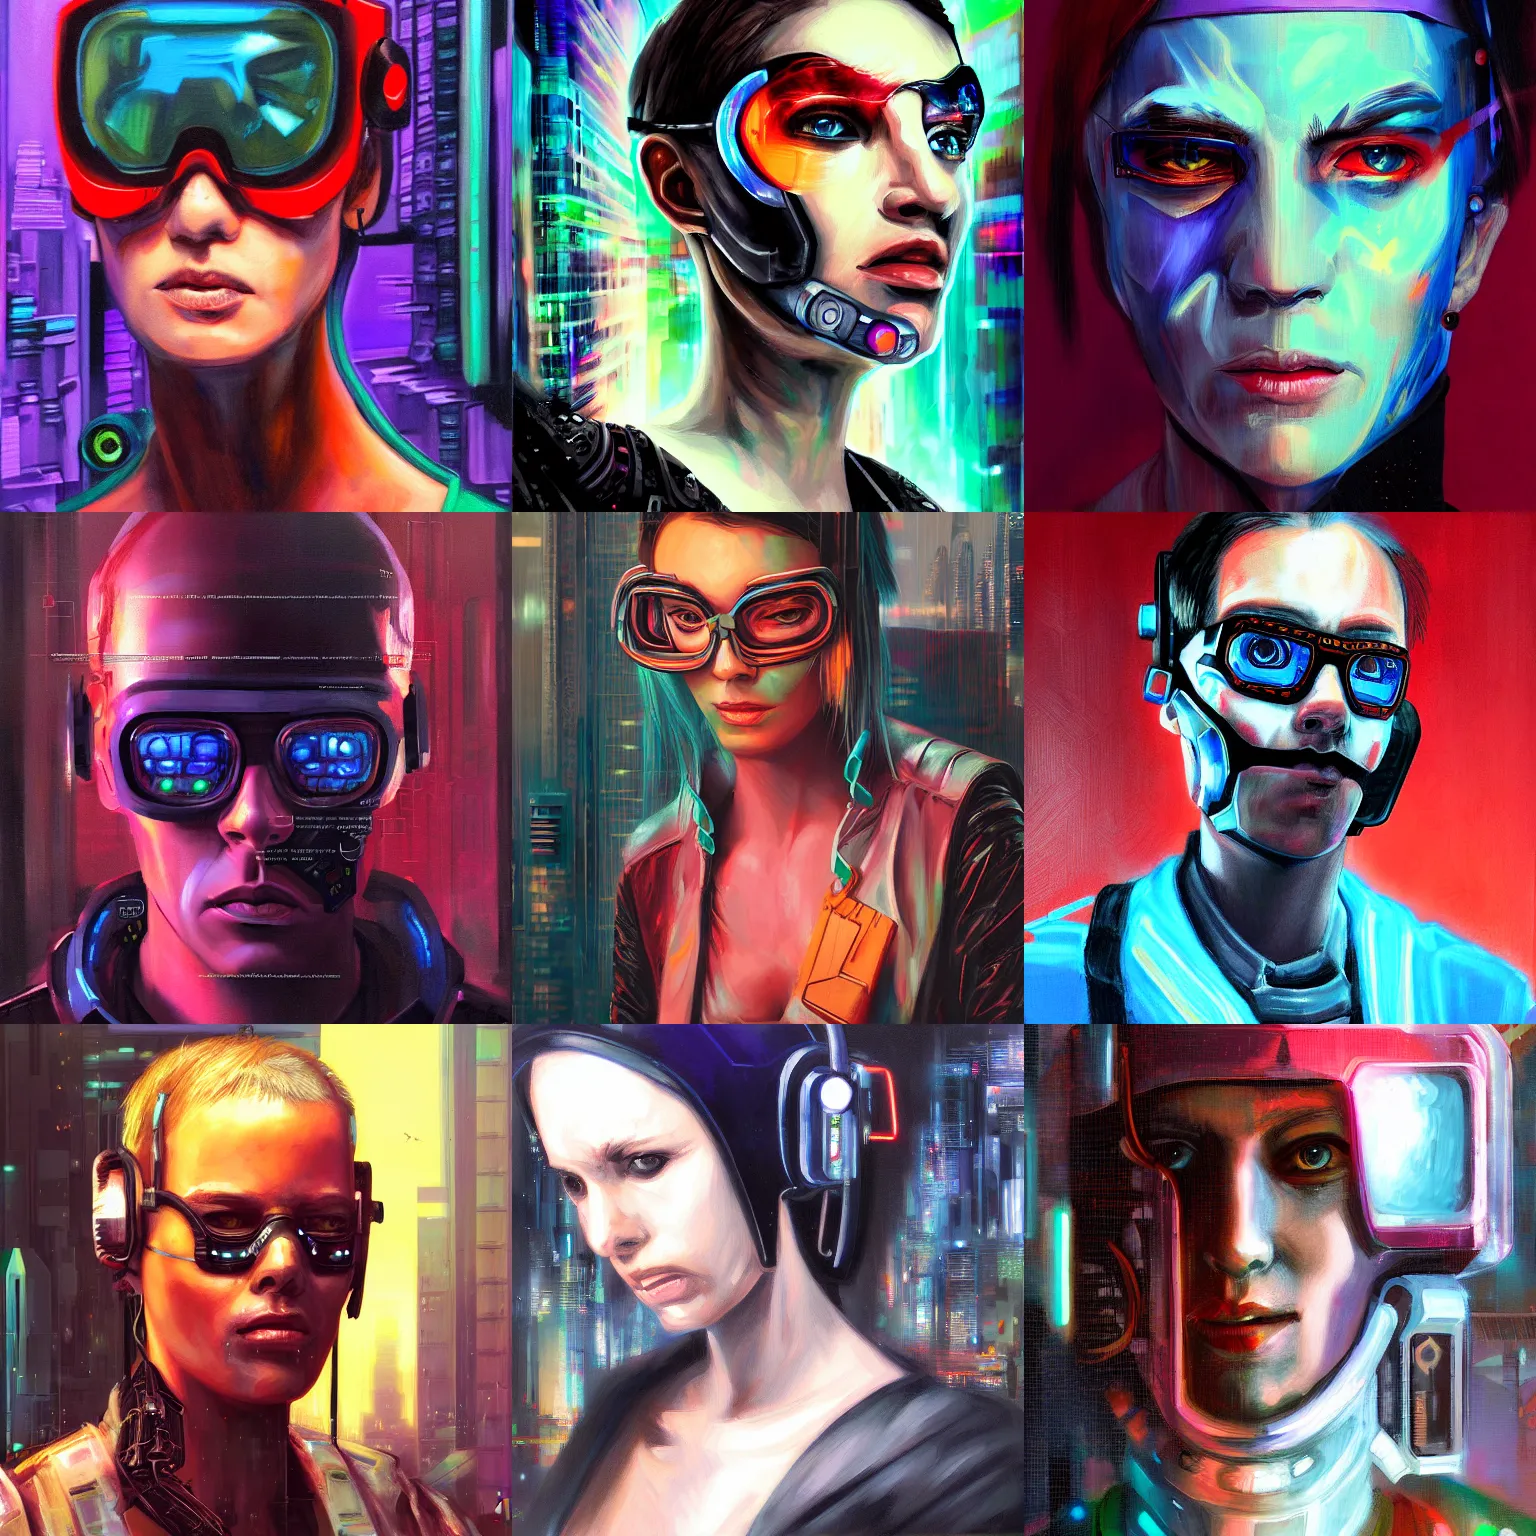 Prompt: A cyberpunk portrait painting